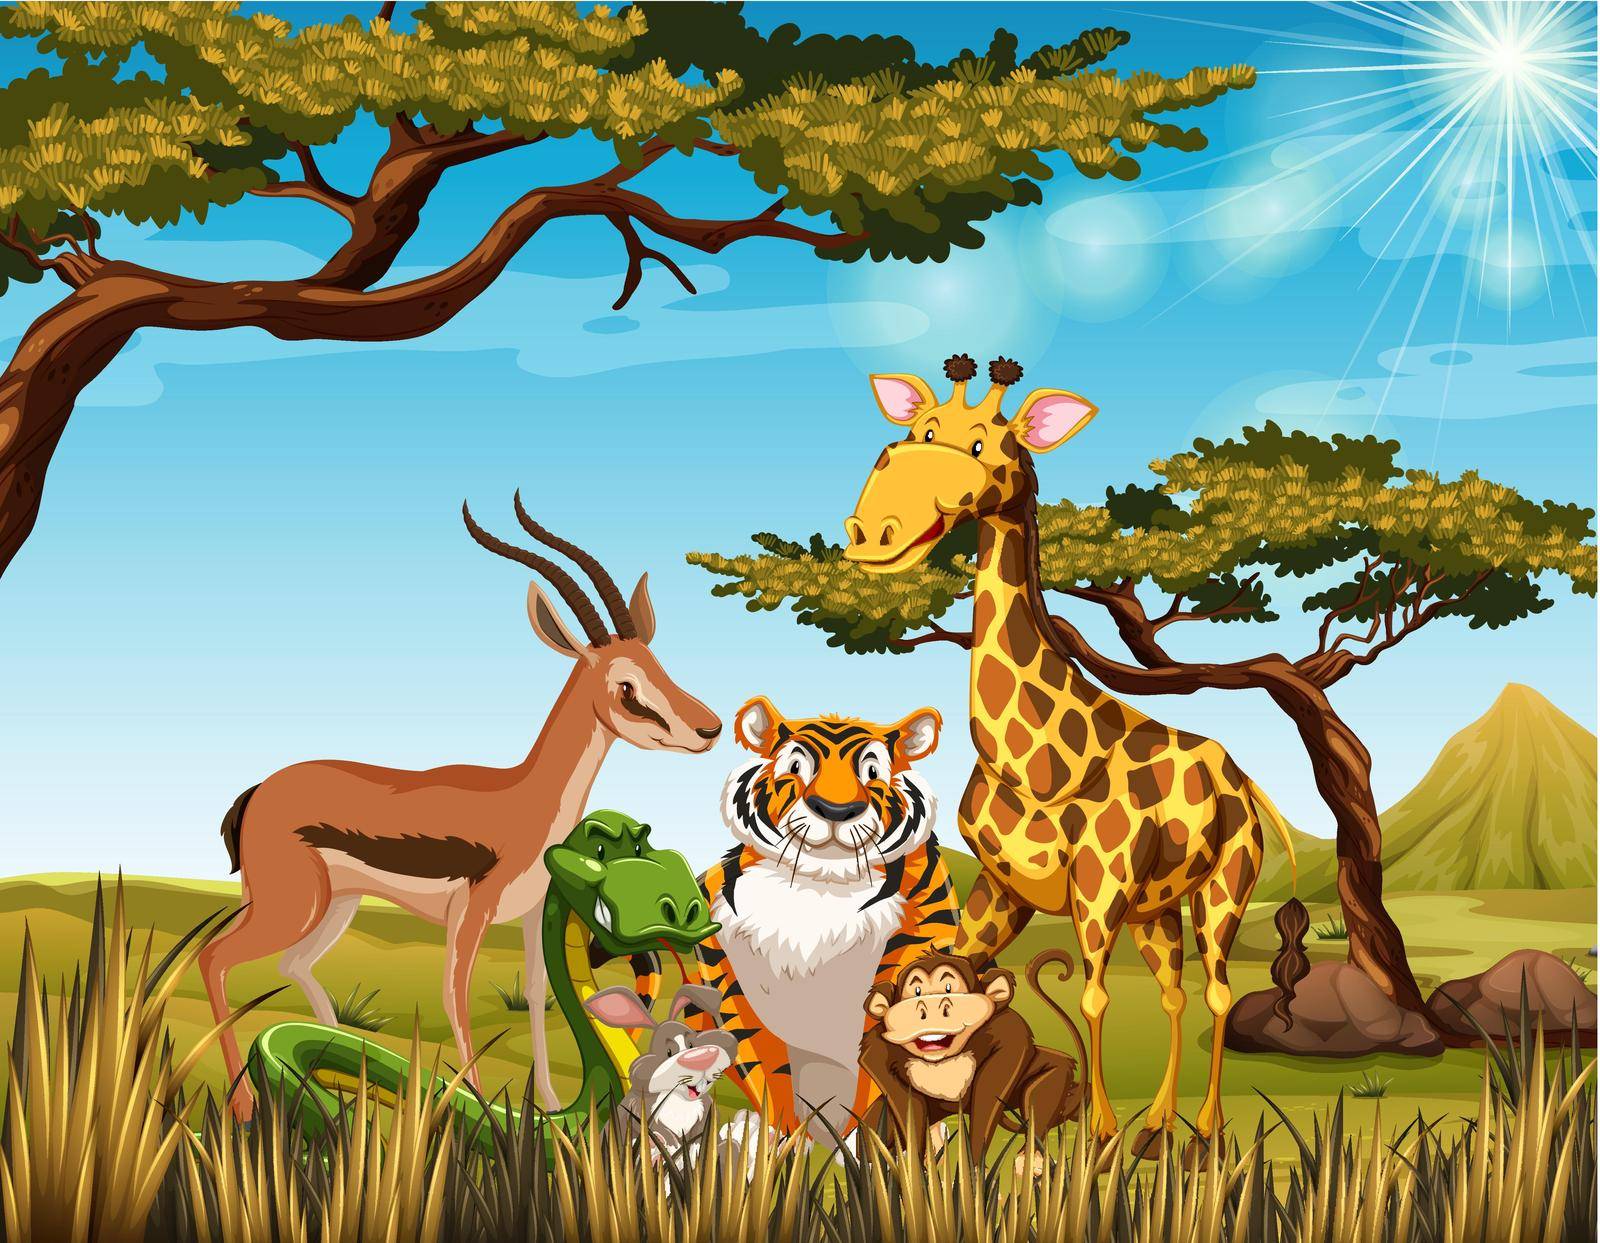 Wild animals in the savanna field illustration